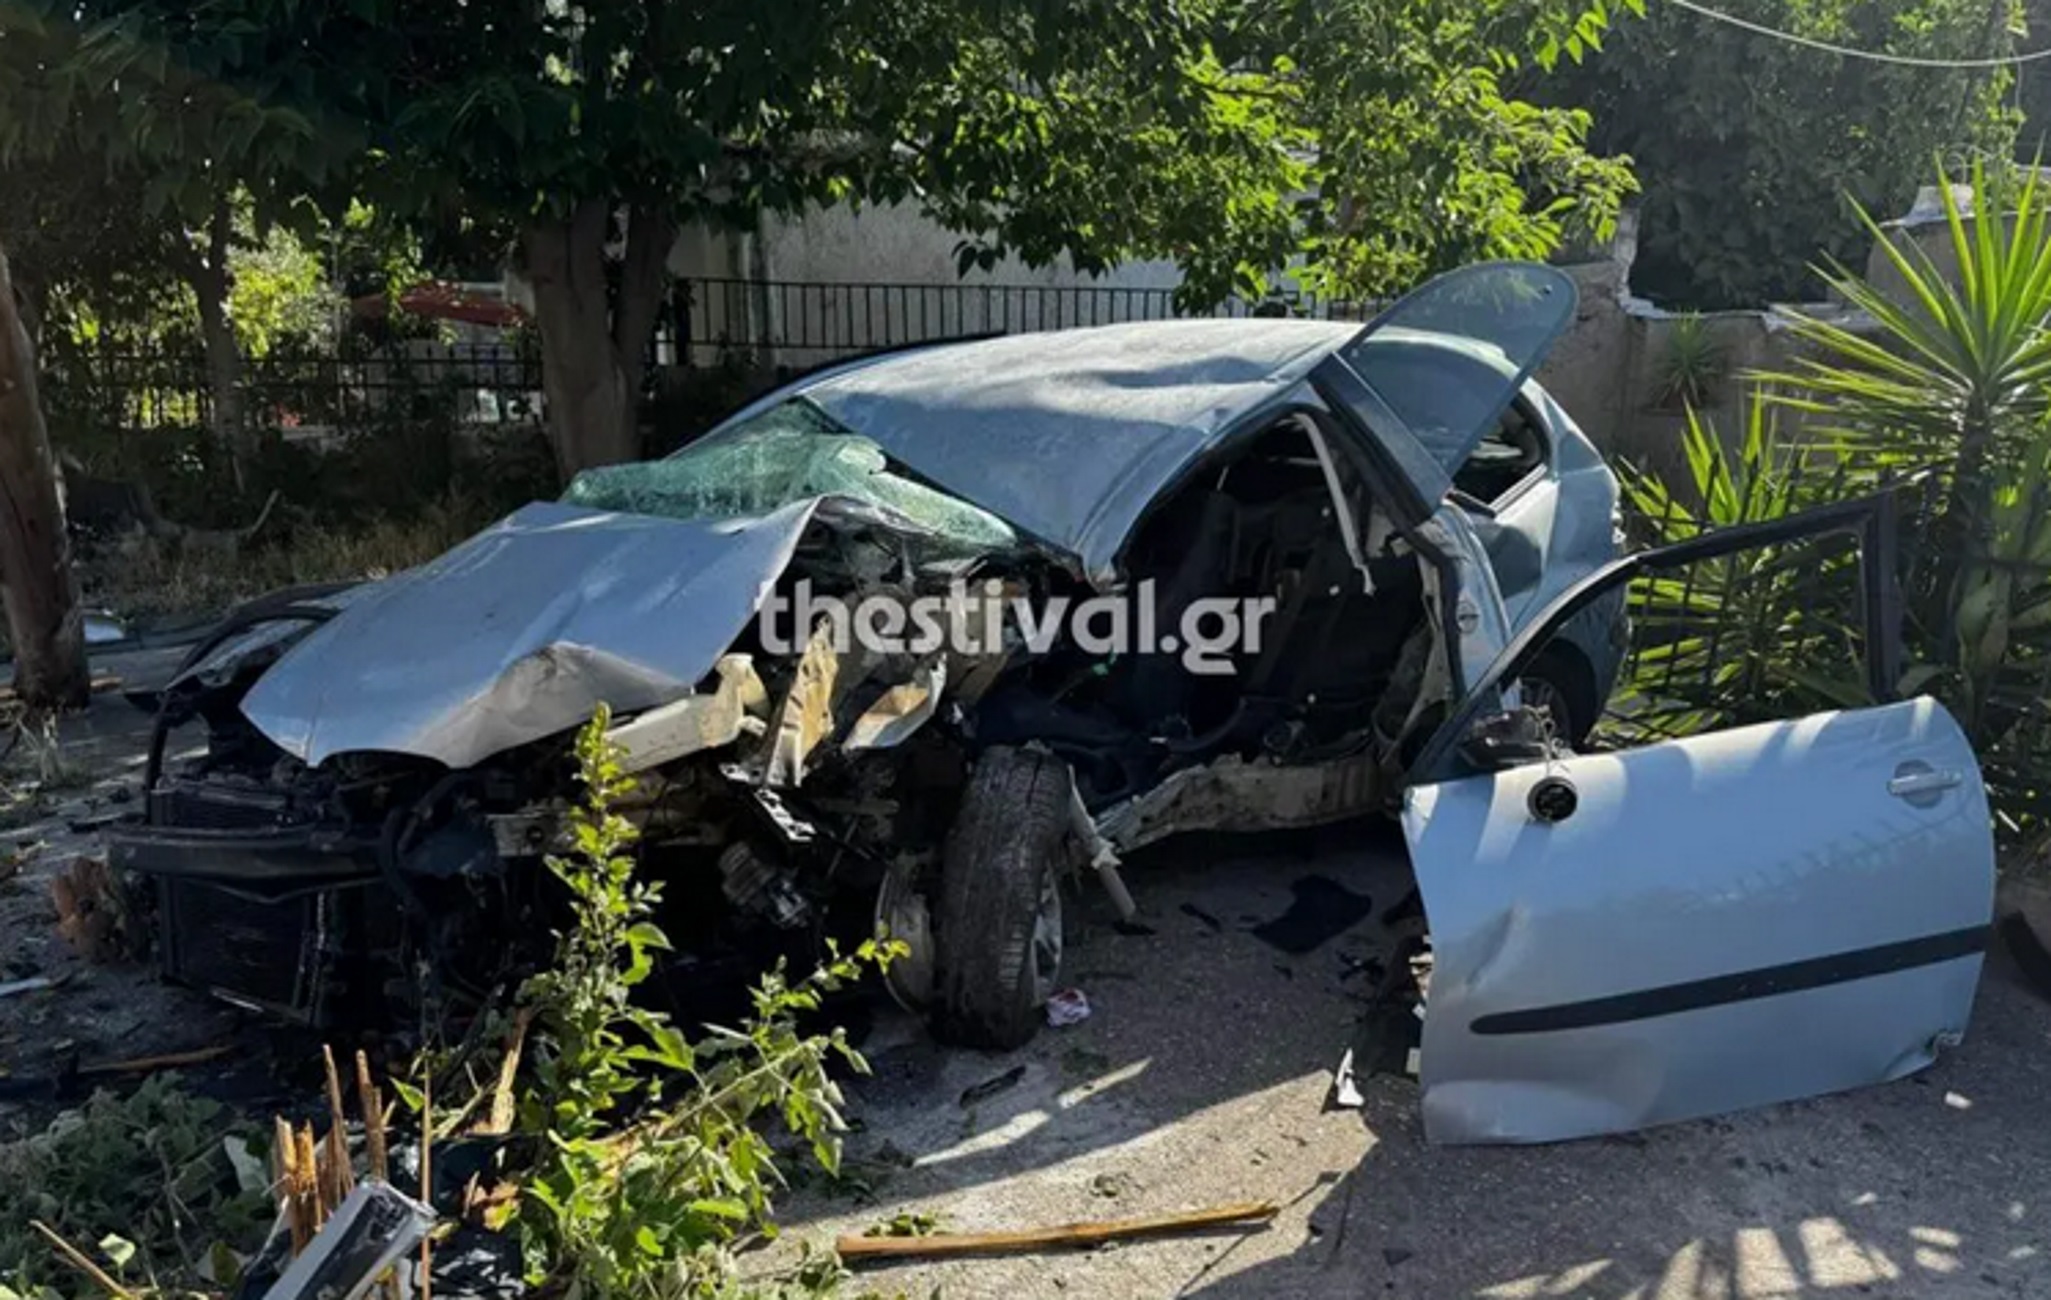 Θεσσαλονίκη: Εικόνες μετά το θανατηφόρο τροχαίο στη λεωφόρο Δενδροποτάμου με νεκρό έναν 22χρονο οδηγό αυτοκινήτου